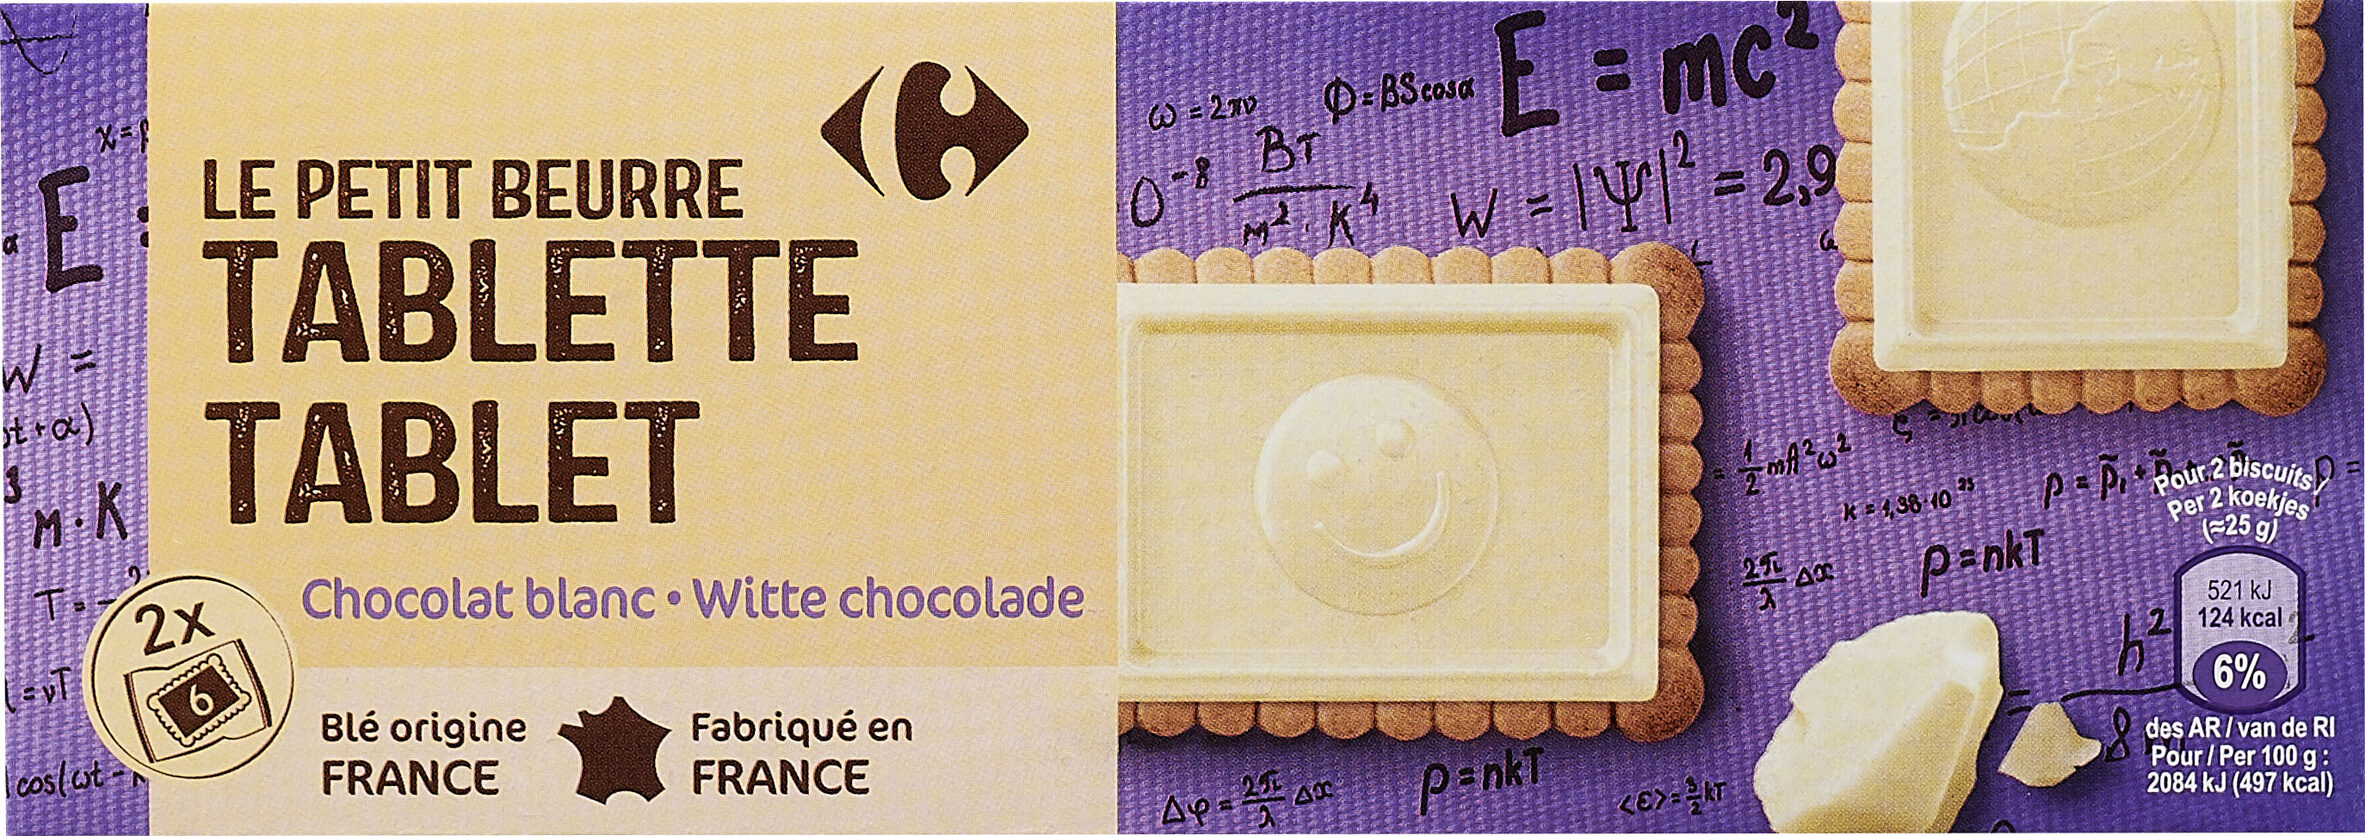 LE PETIT BEURRE TABLETTE Chocolat blanc - Produkt - fr